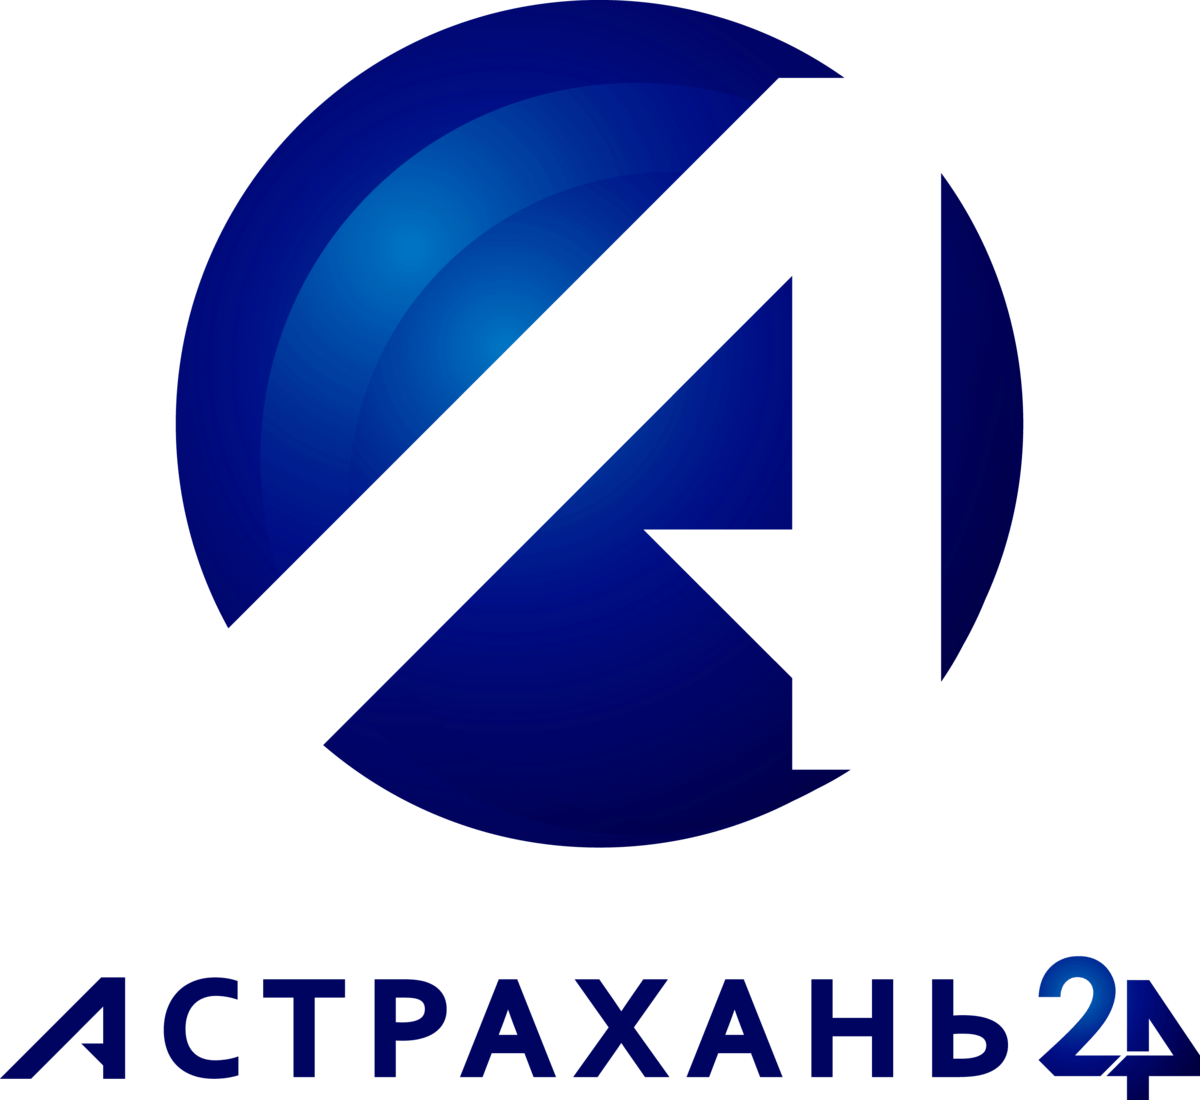 Канал астрахань 24. Астрахань 24 лого. Телевидение логотип. Эмблема Астраханского ТВ.